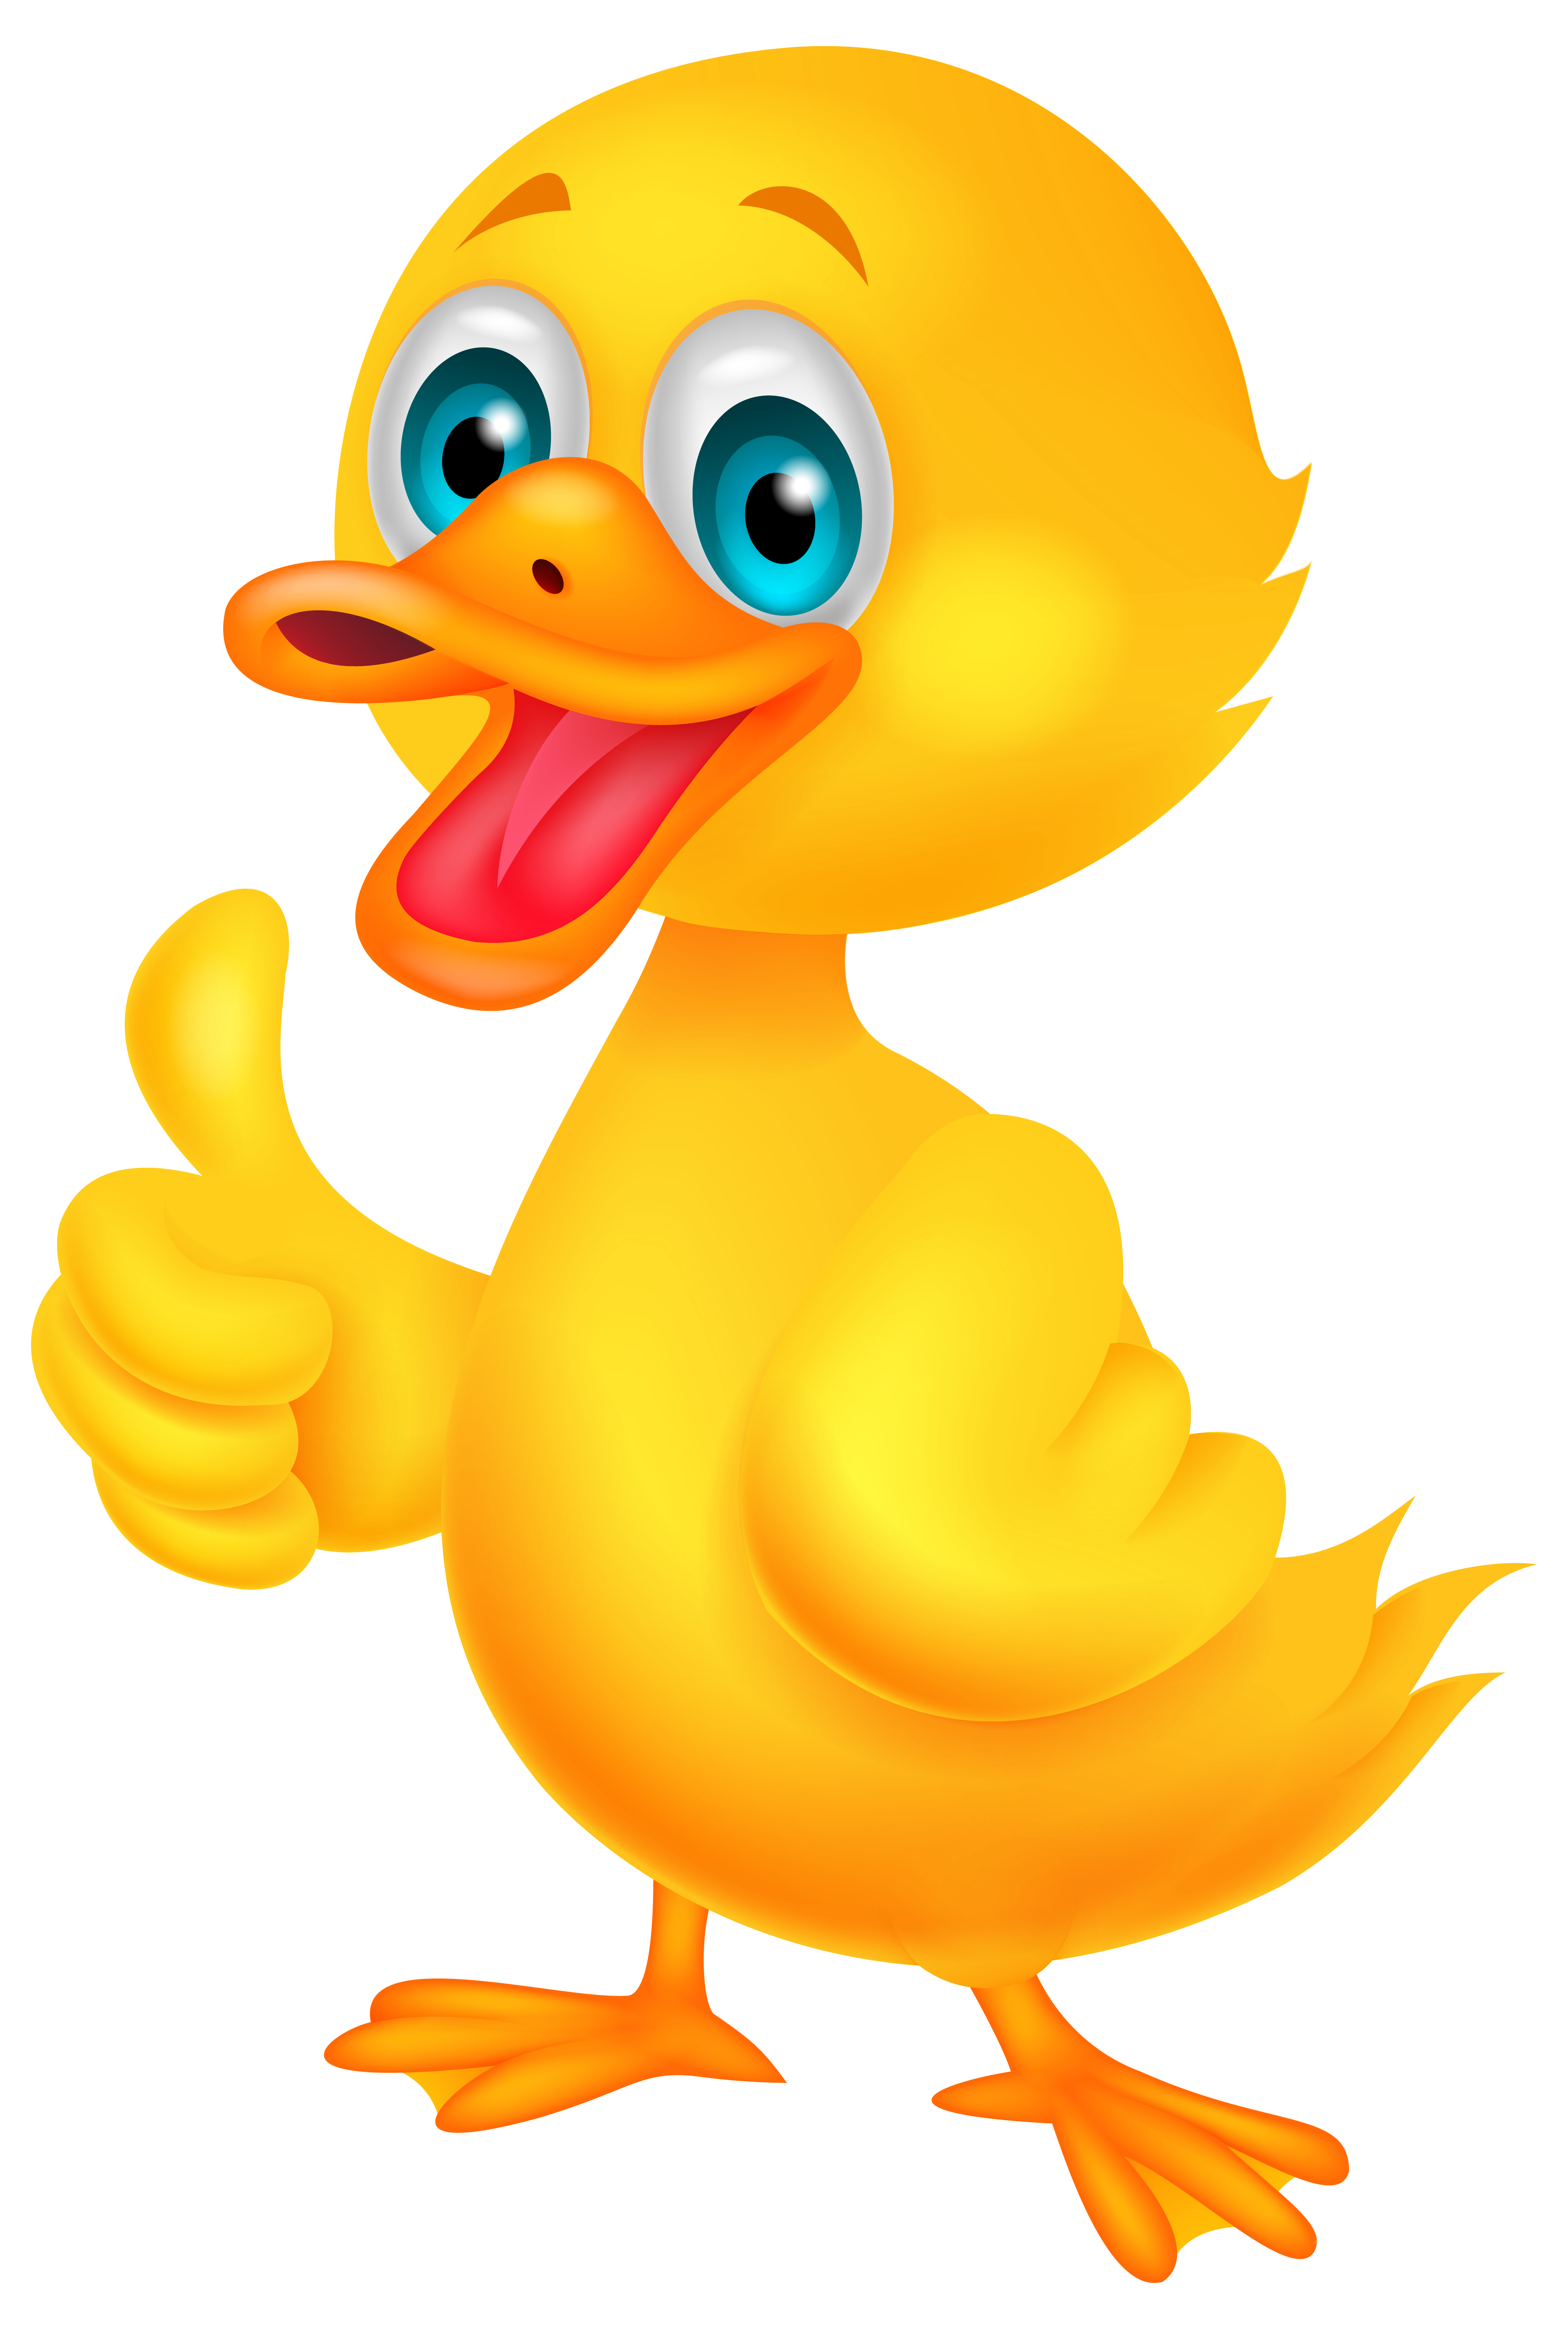 Little duck clip art image - Clipart Duck